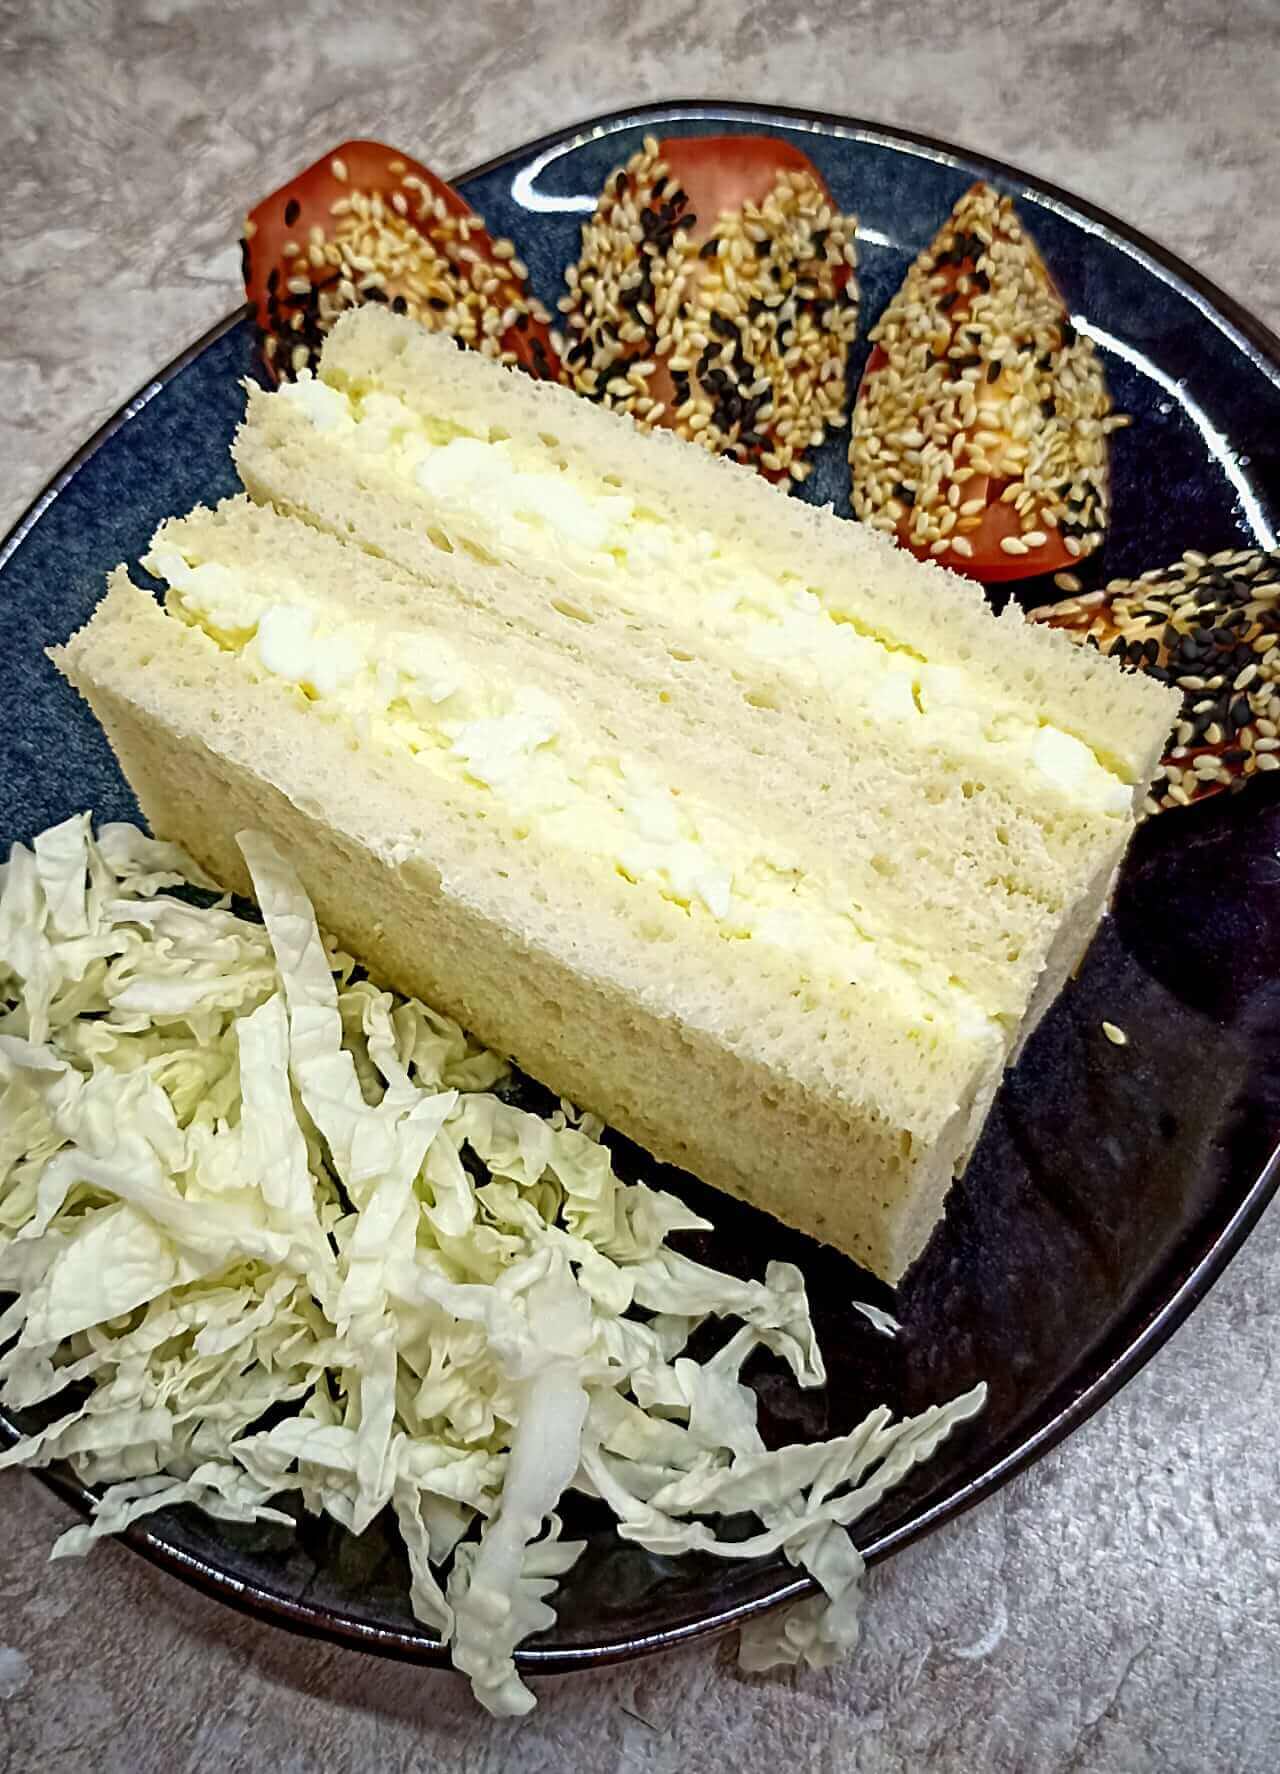 Japanese egg sandwich